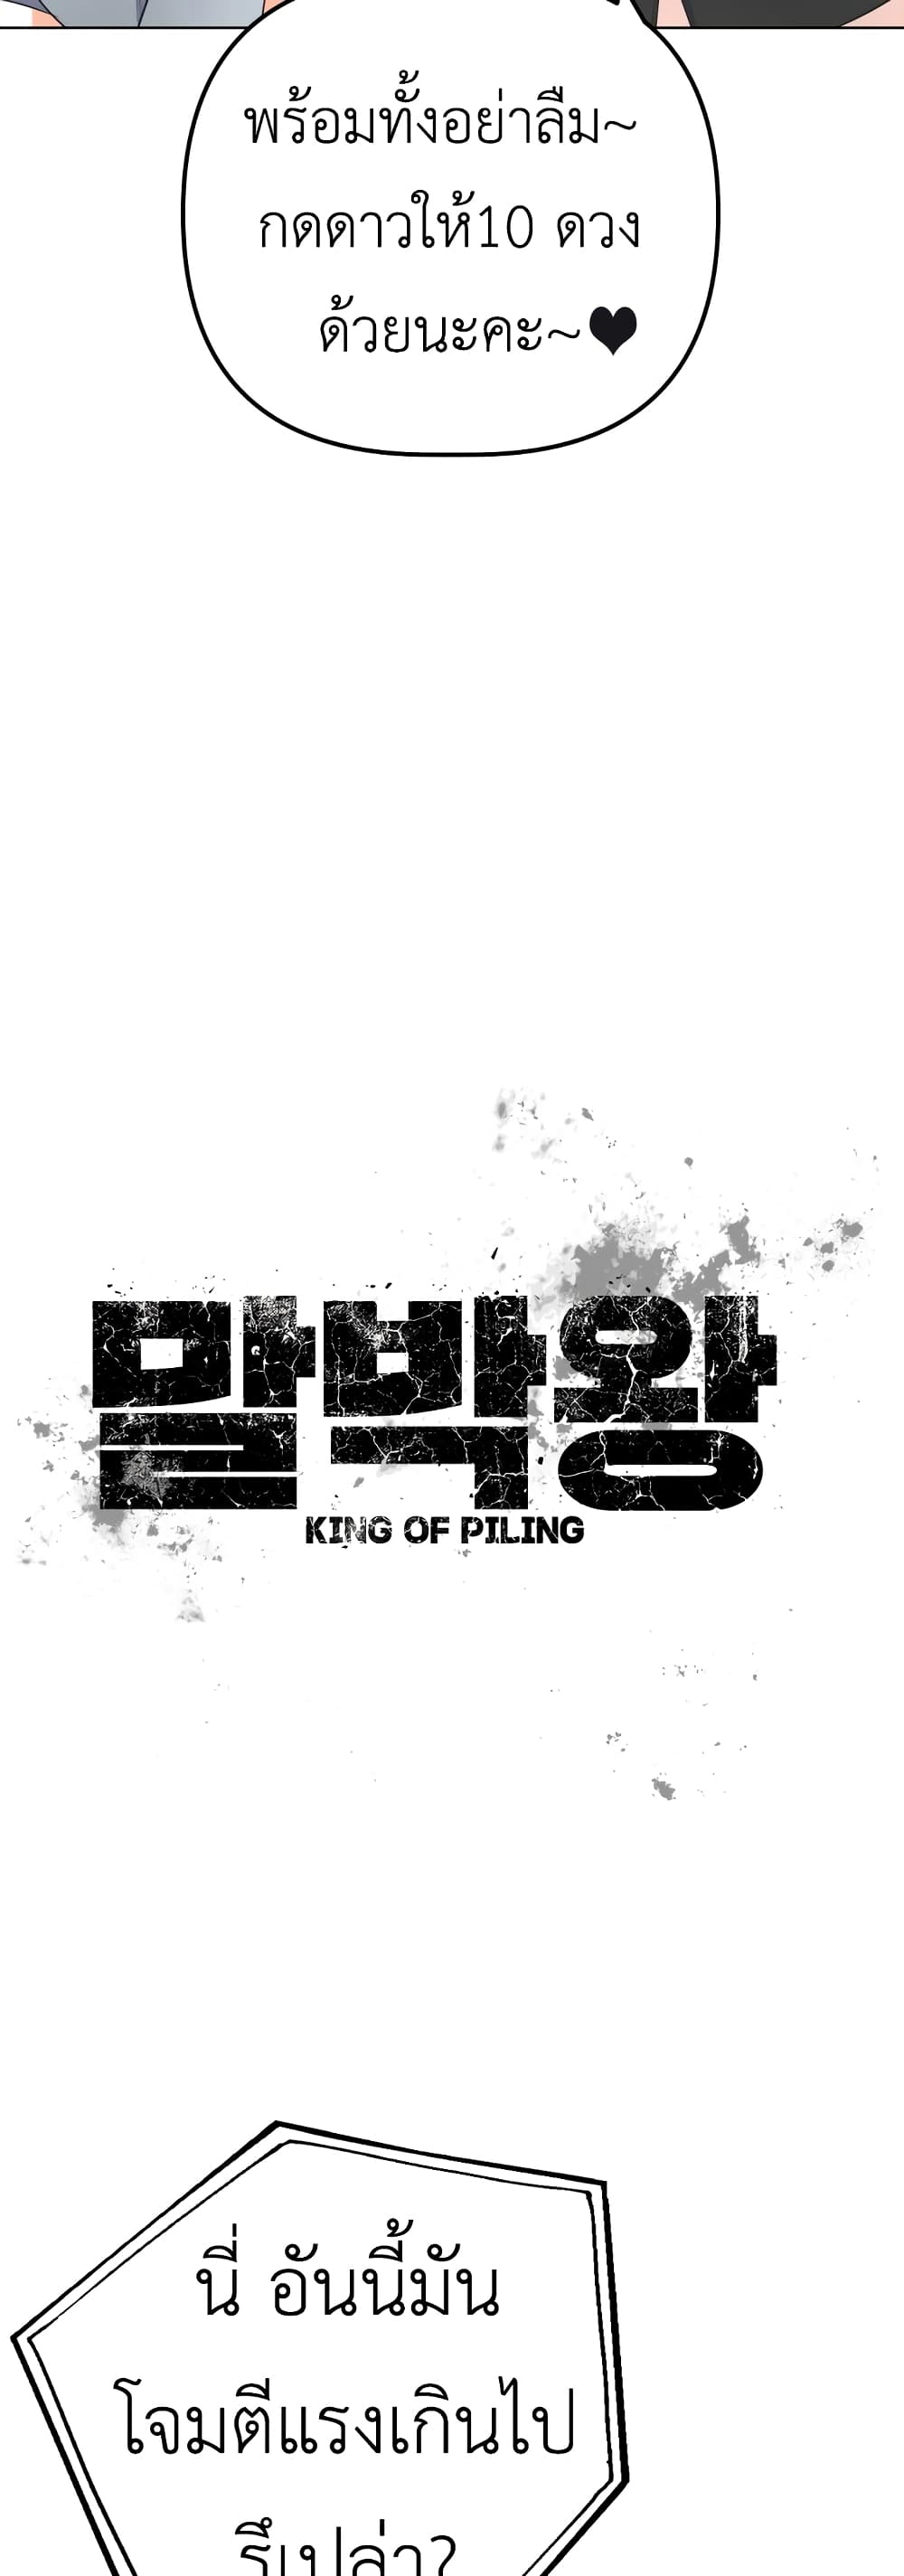 King of Piling 15-15